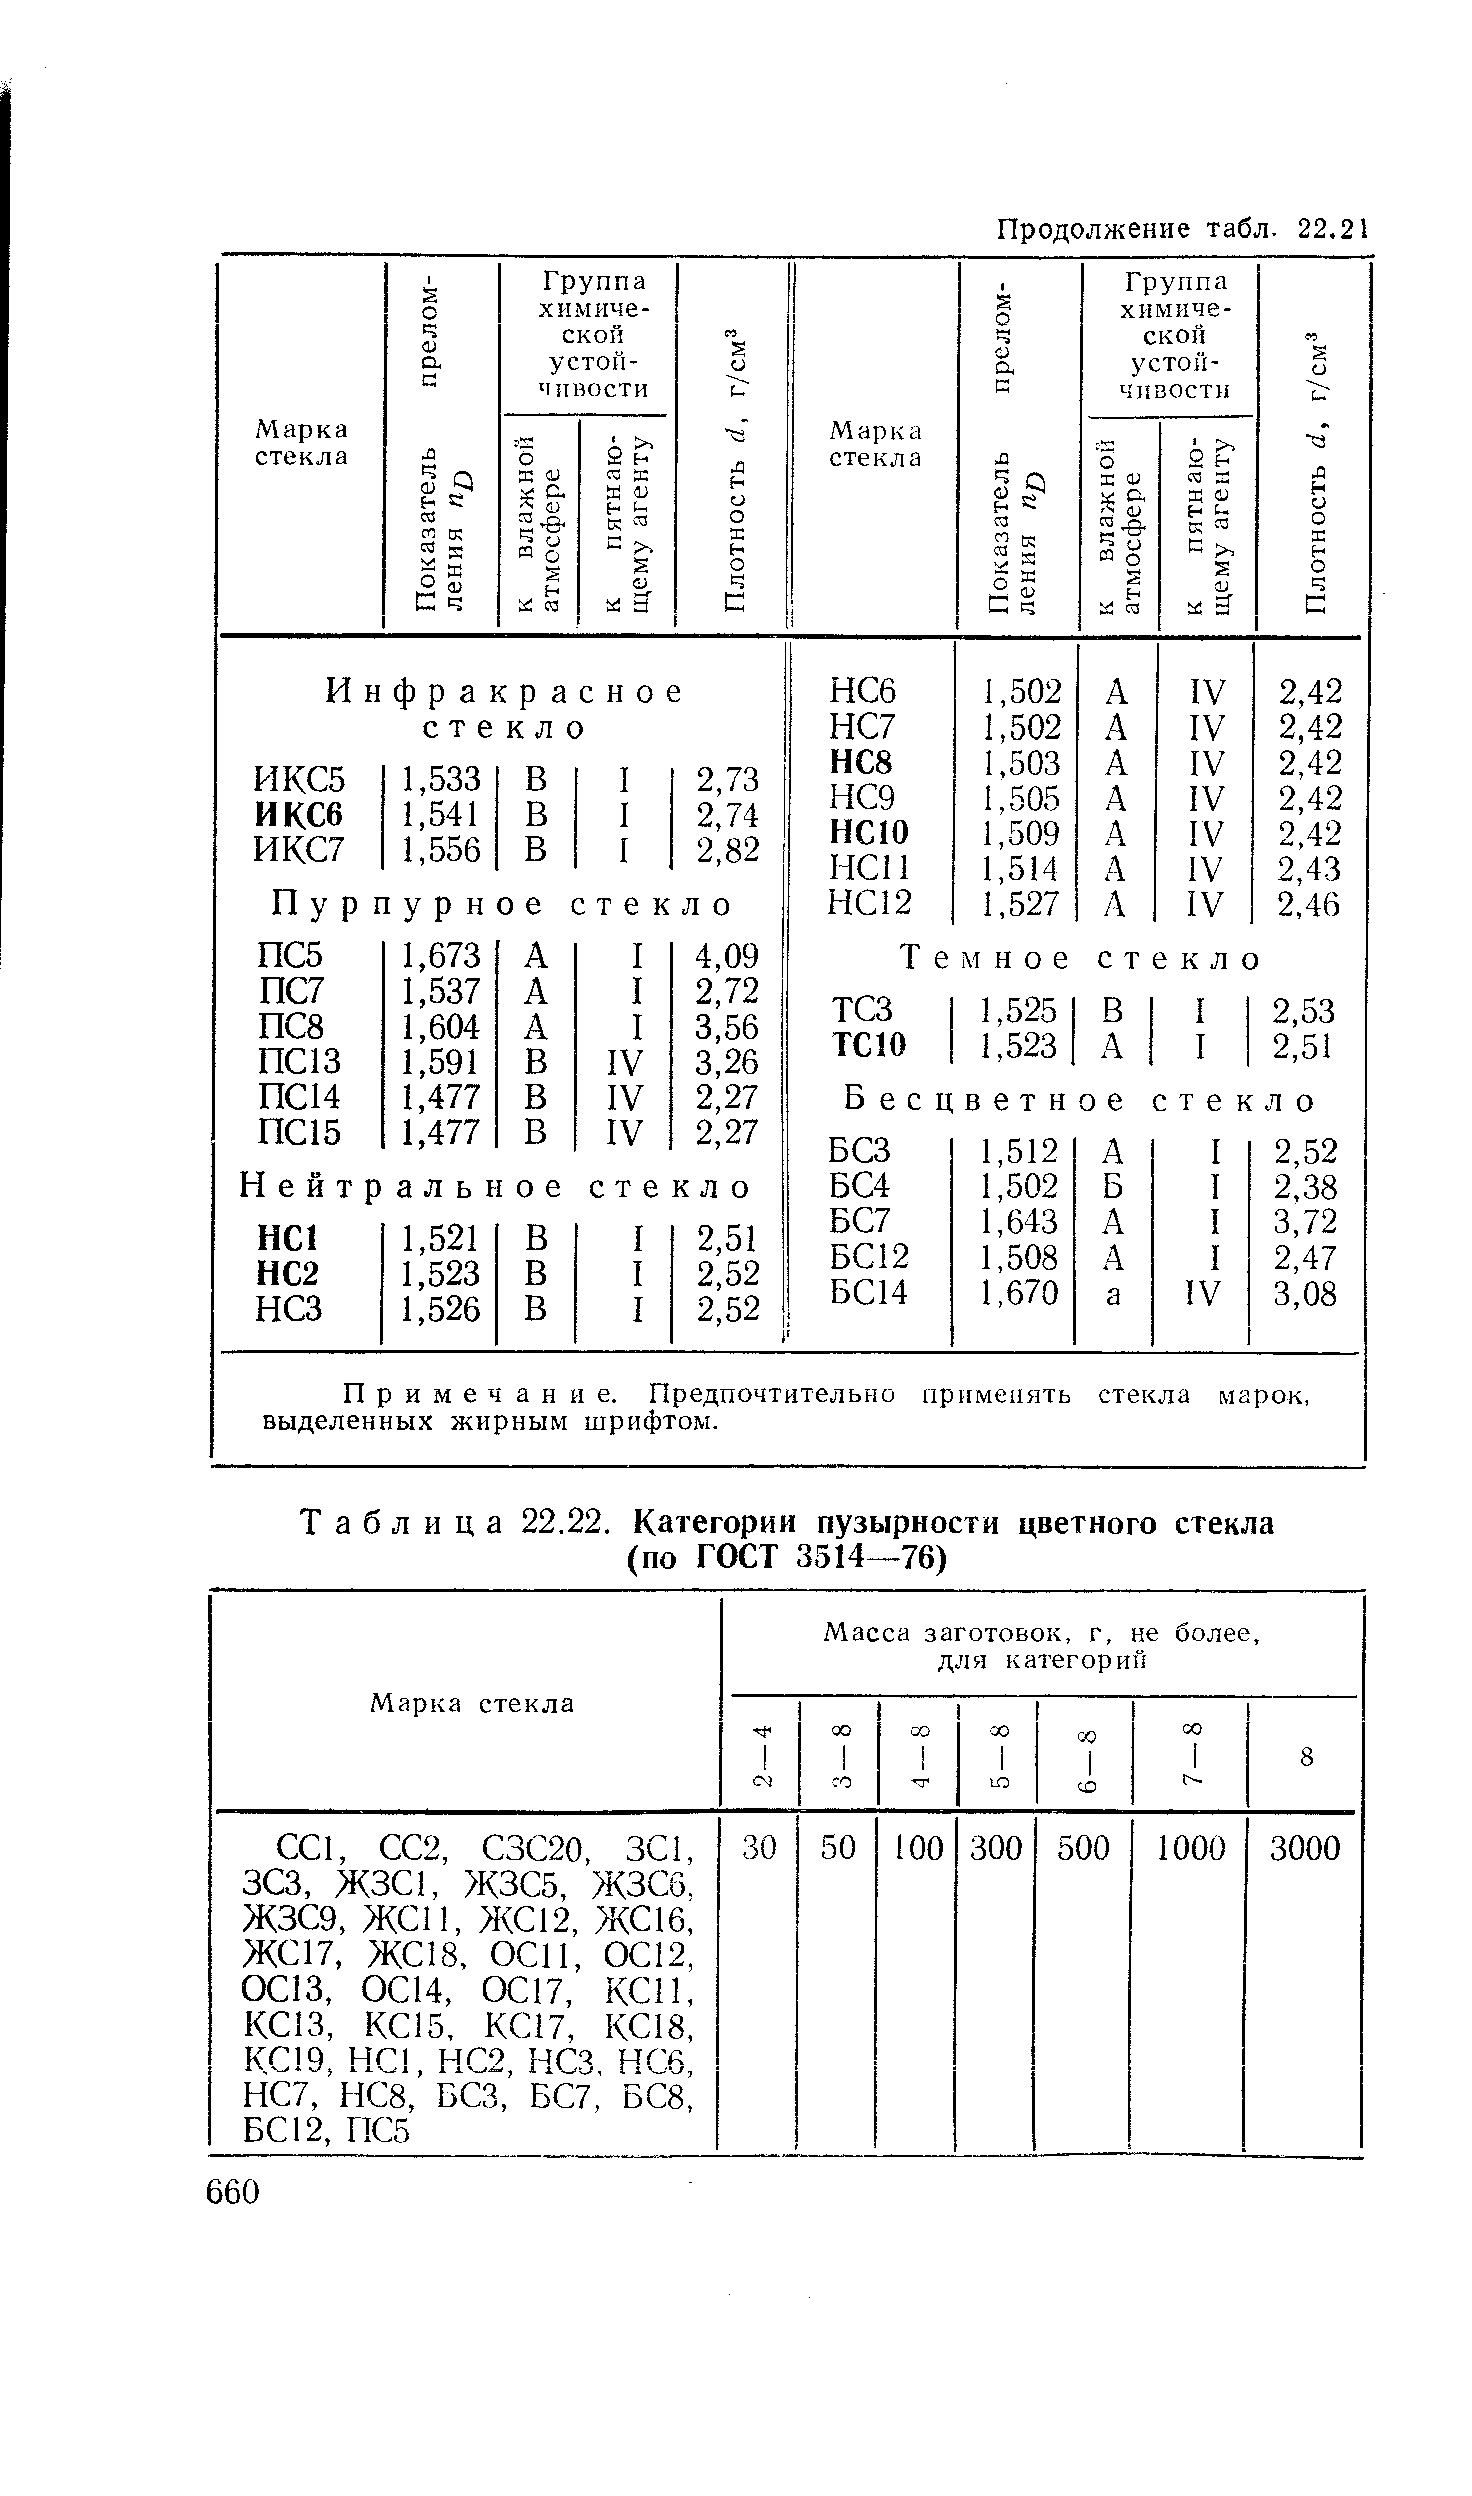 Таблица 22.22. Категории пузырности цветного стекла (по ГОСТ 3514—76)
